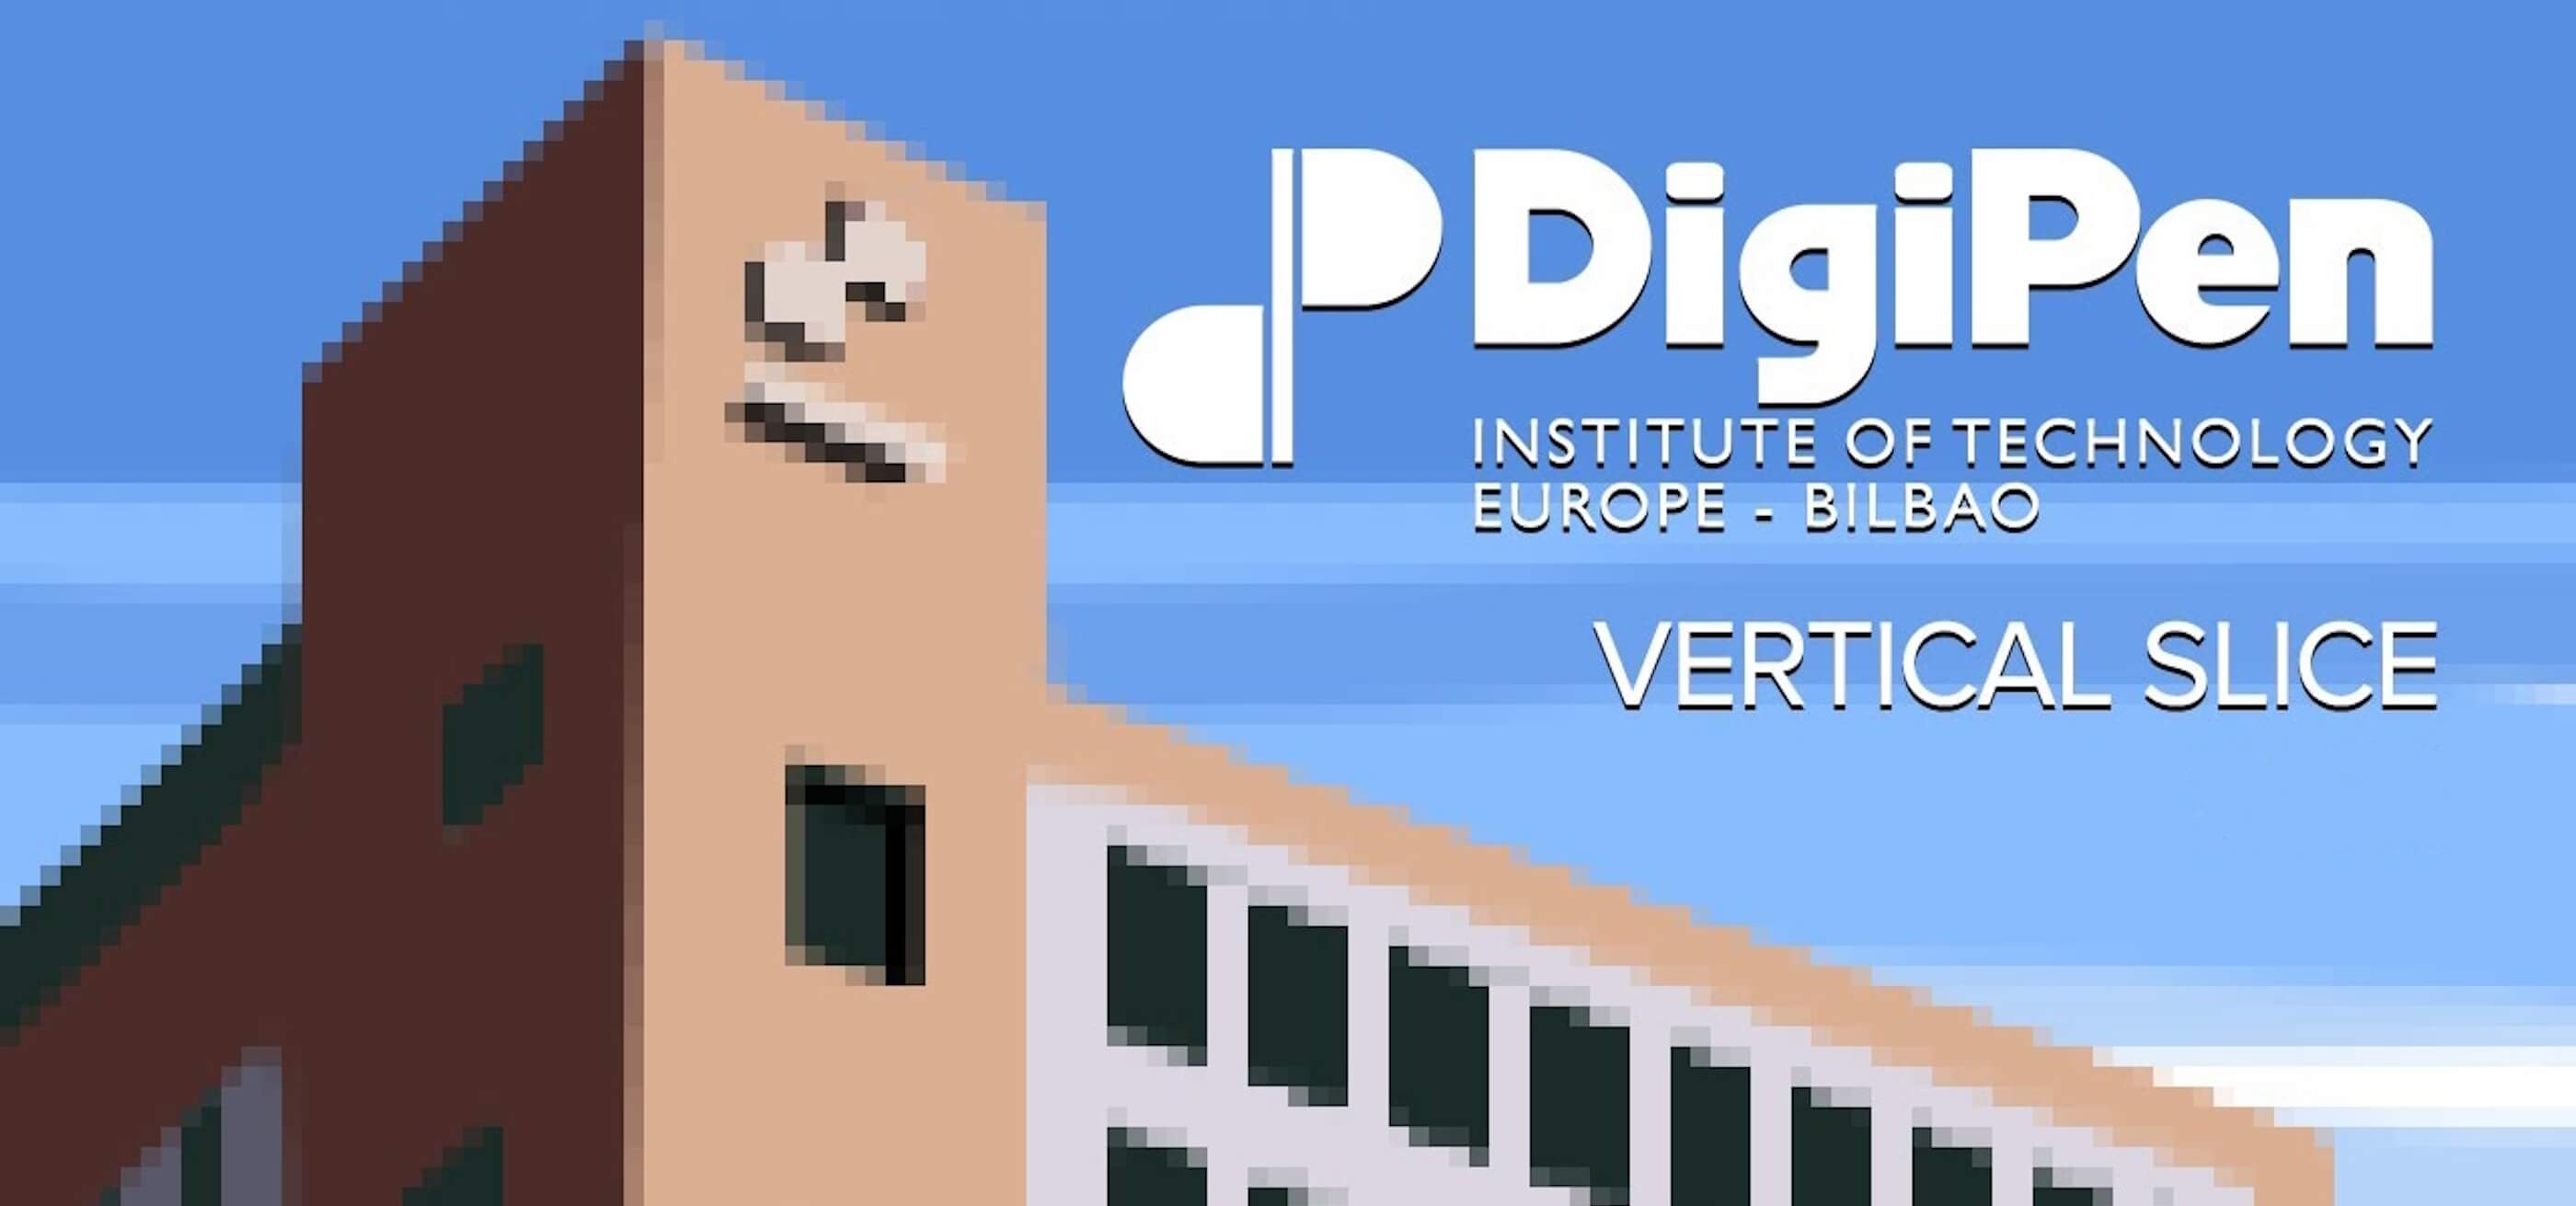 DigiPen Europe-Bilbao campus reinventado con encanto en forma de arte píxel